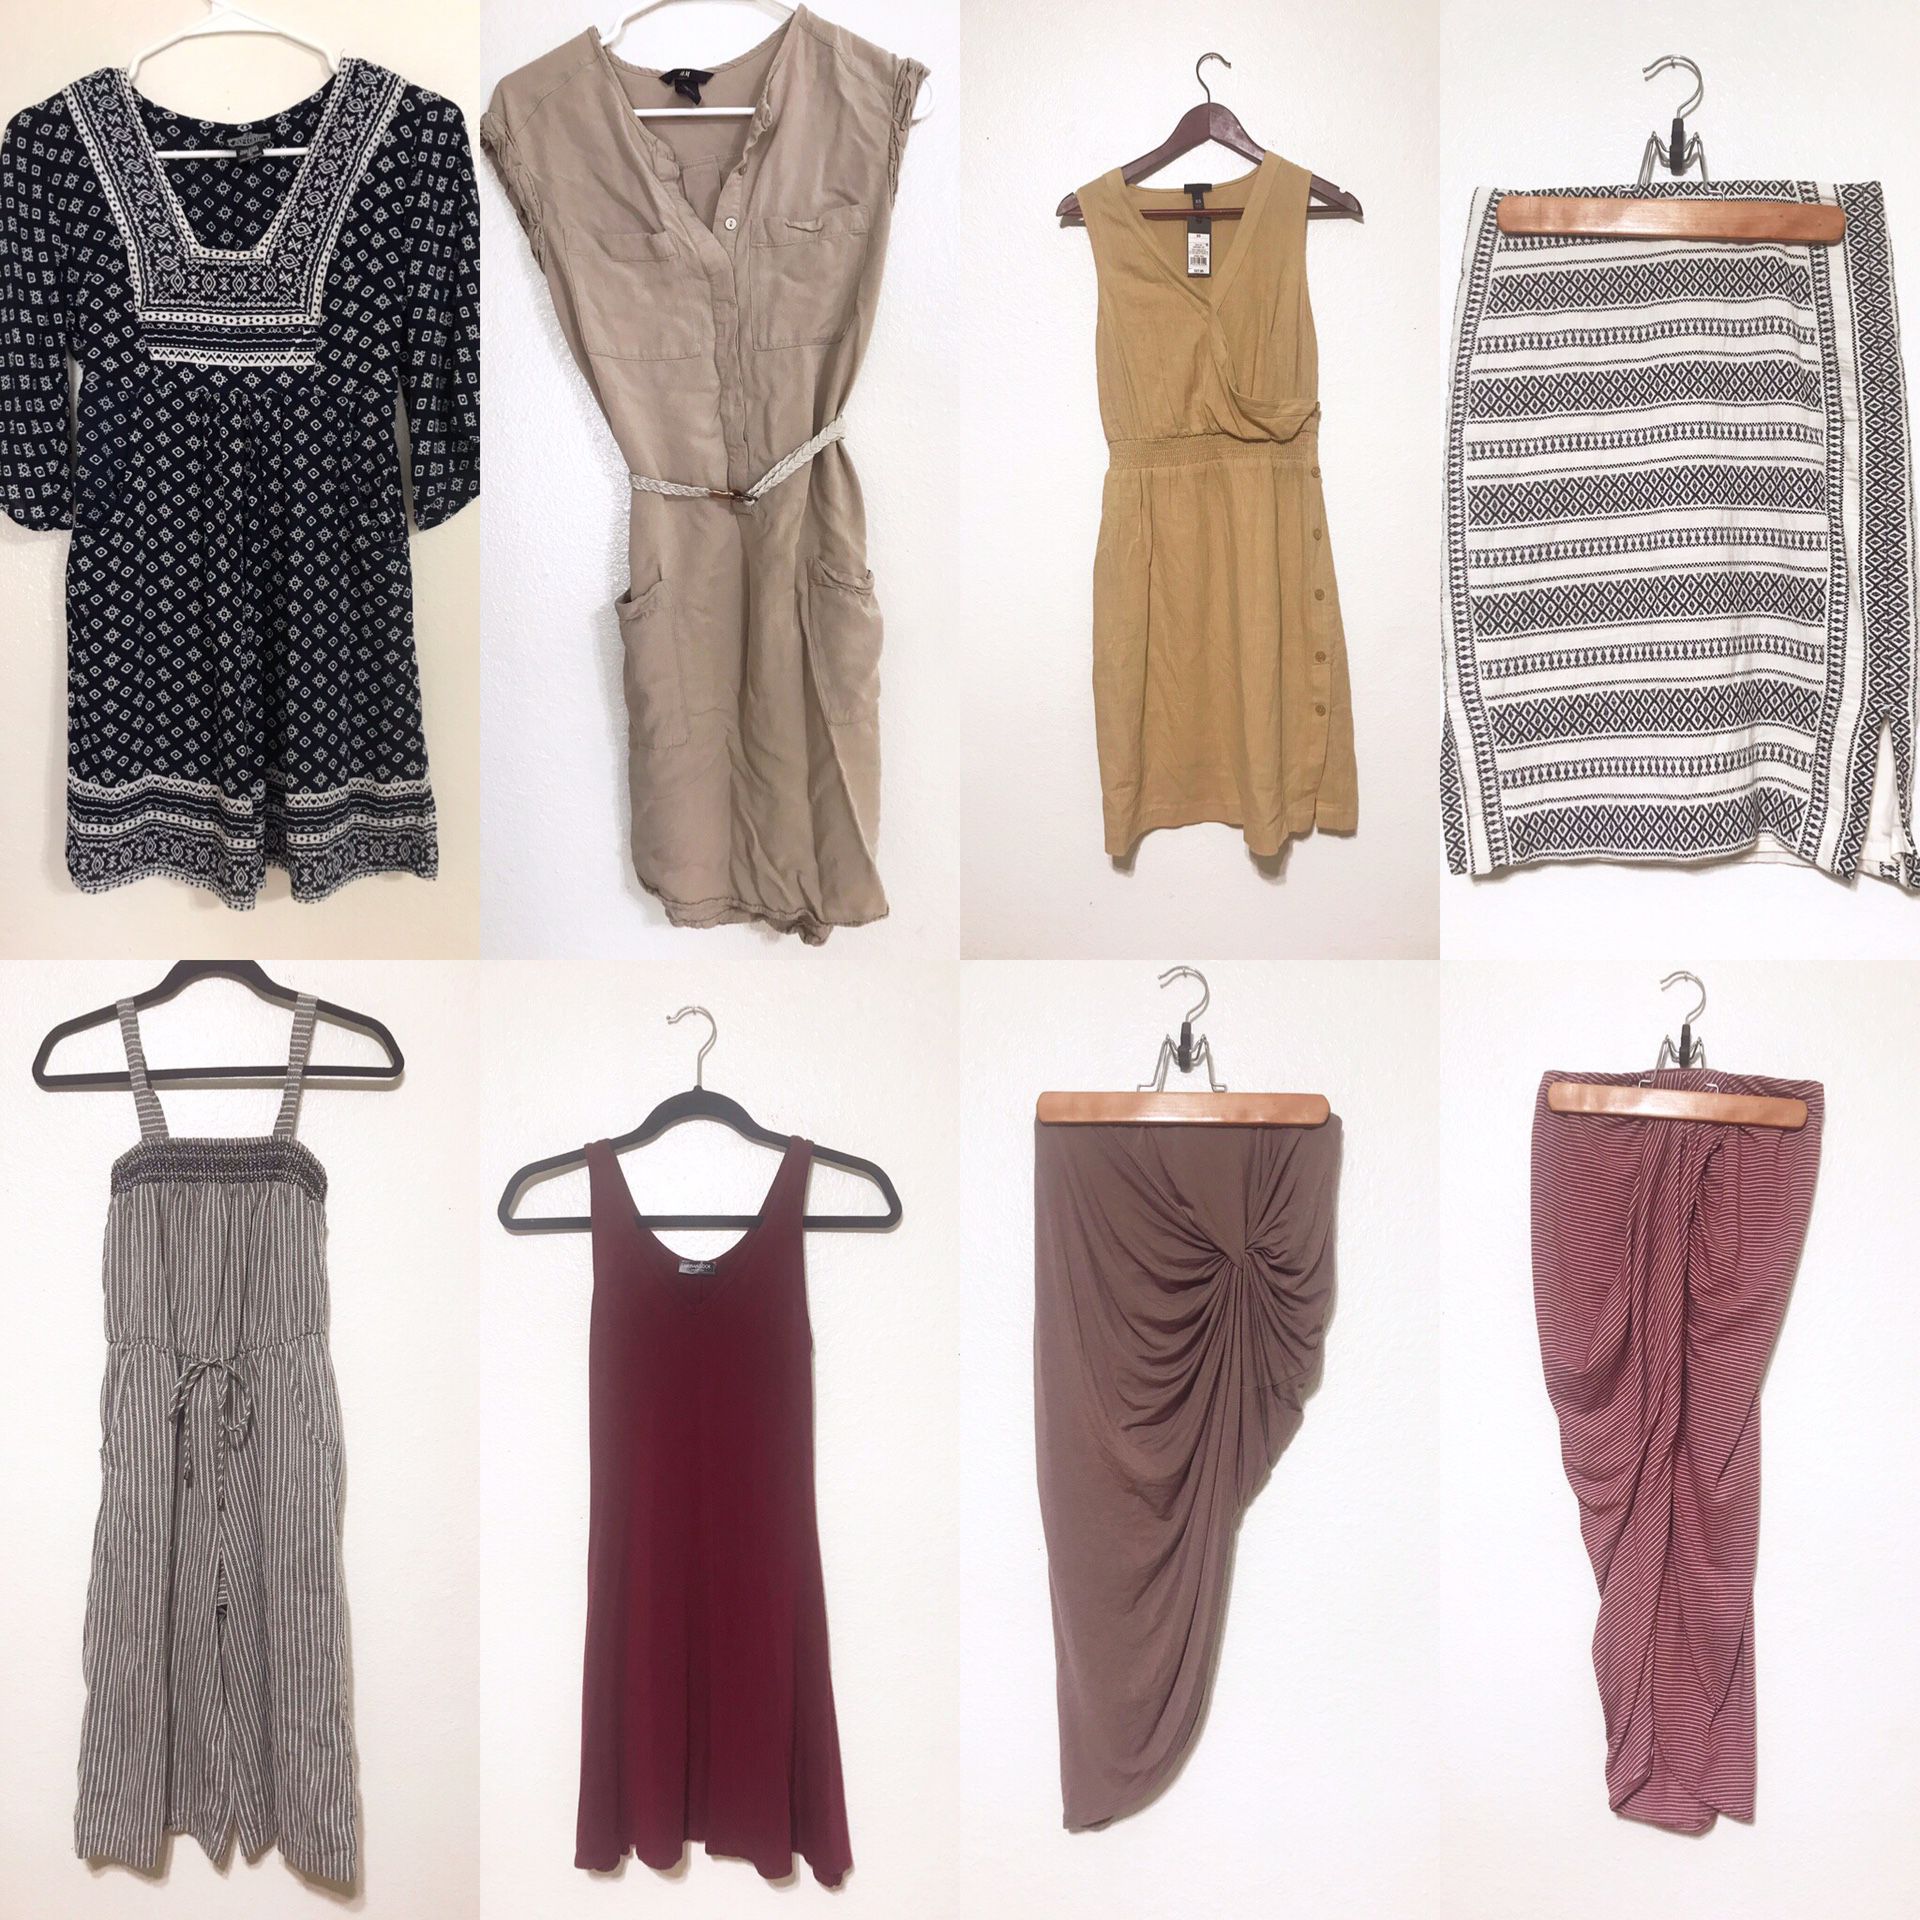 Boho women’s clothing - dresses, jumper, skirts